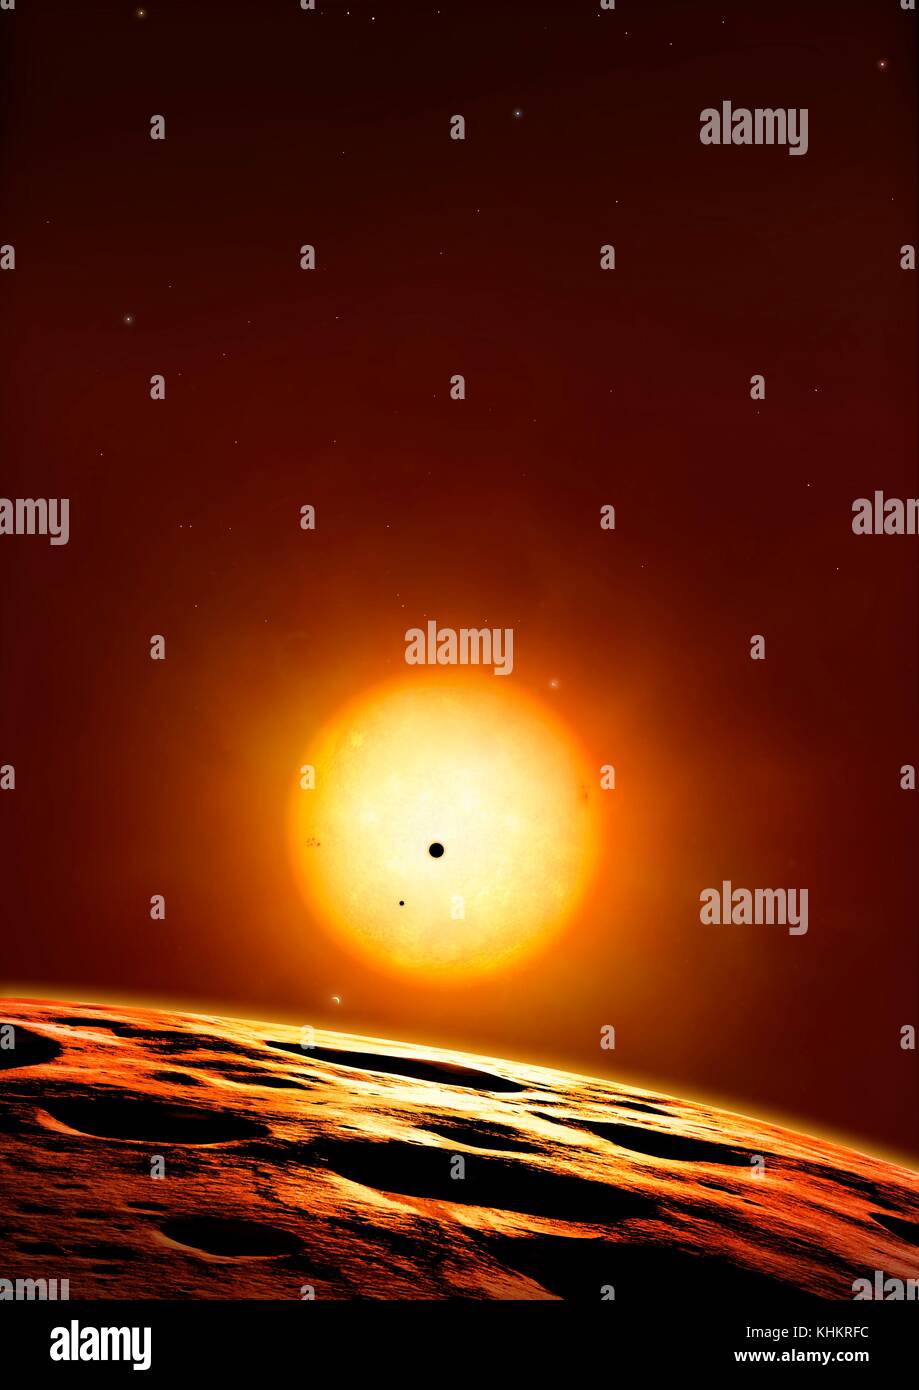 Système de planètes Kepler 444,illustration.Kepler 444 est une ancienne star, estimée à environ 11,2 milliards d'années, plus de deux fois l'âge de l'Sun.Il est de 117 années-lumière de la terre dans la constellation de la Lyre.En 2015, les astronomes ont confirmé que ce cool star (5000 degrés Kelvin) est l'hôte d'au moins cinq planètes rocheuses,variant de 0,4 à 0,7 fois le rayon de la Terre ,ou entre les tailles de mercure et Mars.Toutefois,les planètes sont peu probable pour la vie domicile,puisqu'ils sont tous regroupés dans des orbites extrêmement étroite. Banque D'Images